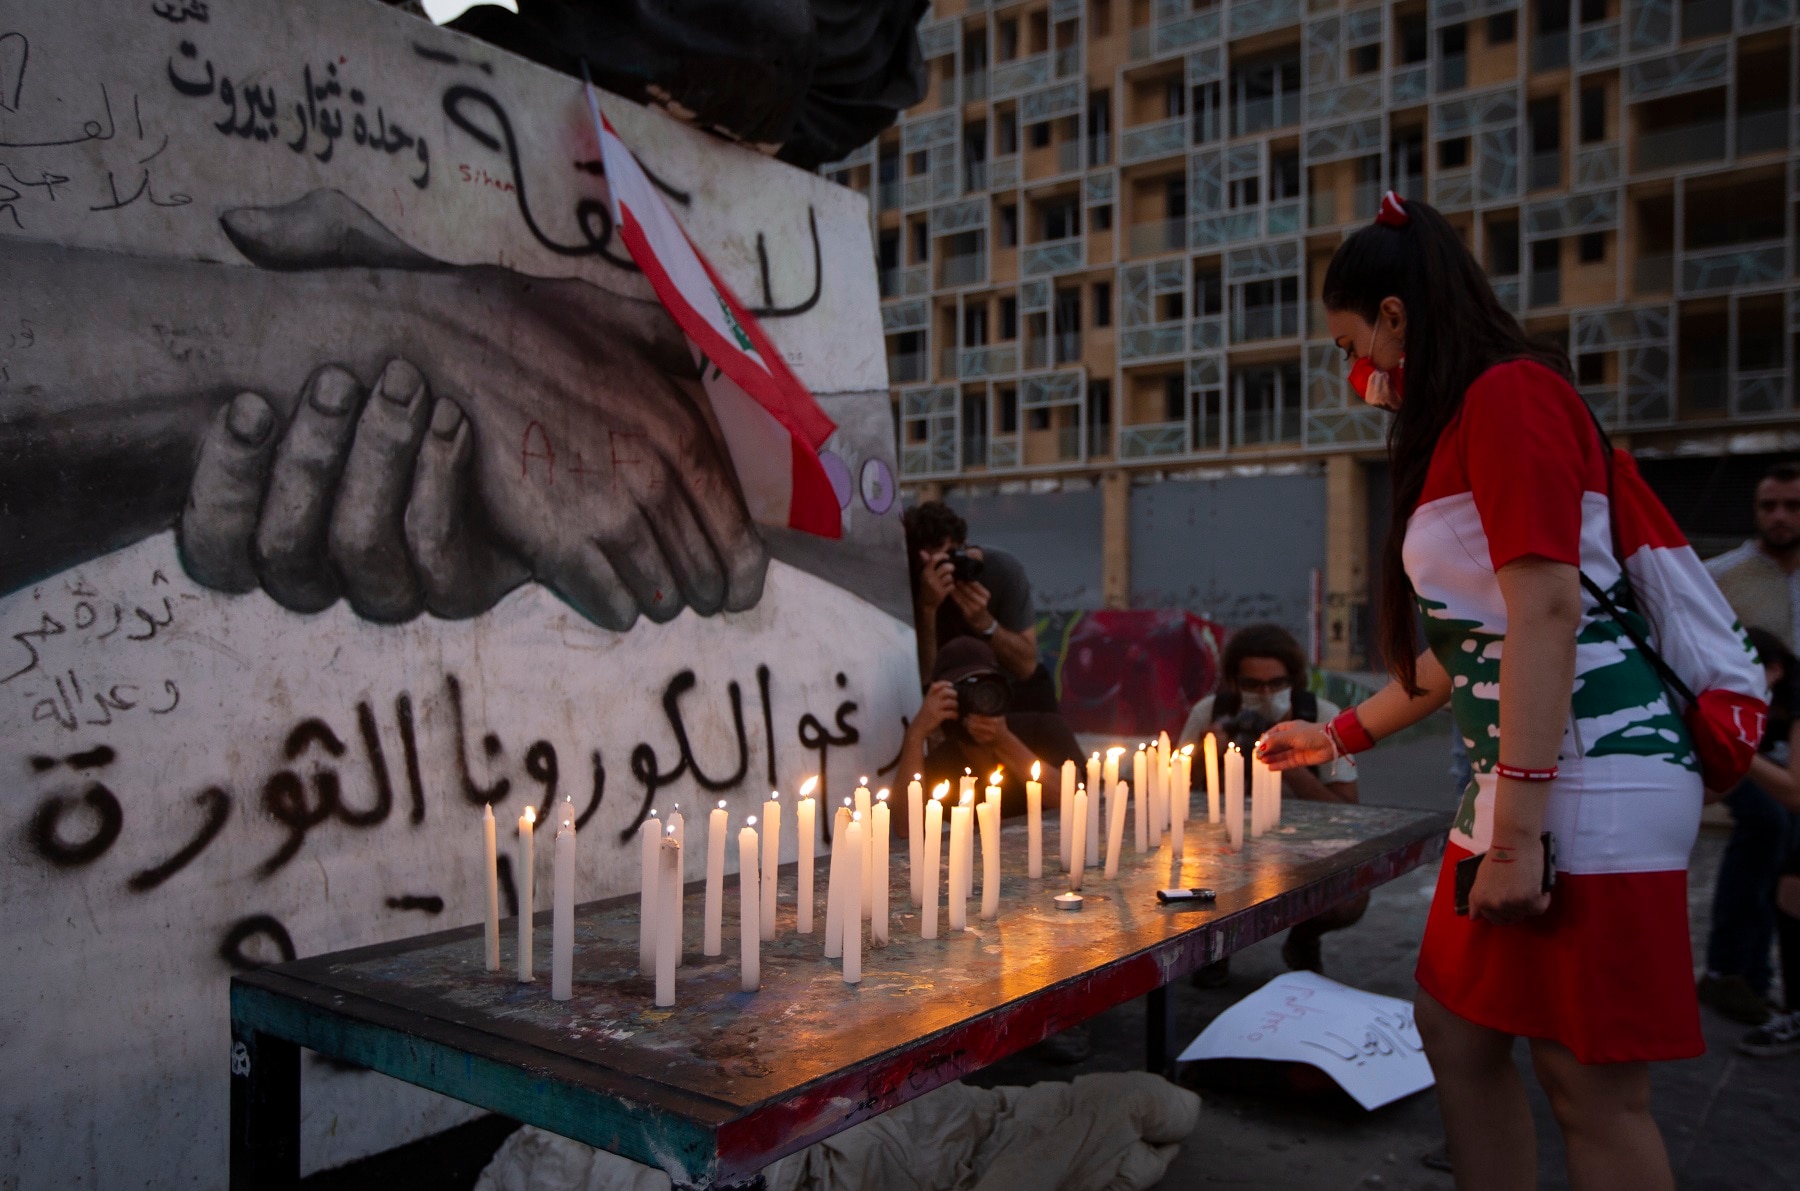 وبحسب وزارة الصحة اللبنانية ، قُتل ما لا يقل عن 190 شخصًا ، وأصيب أكثر من 6000 في انفجار بيروت.